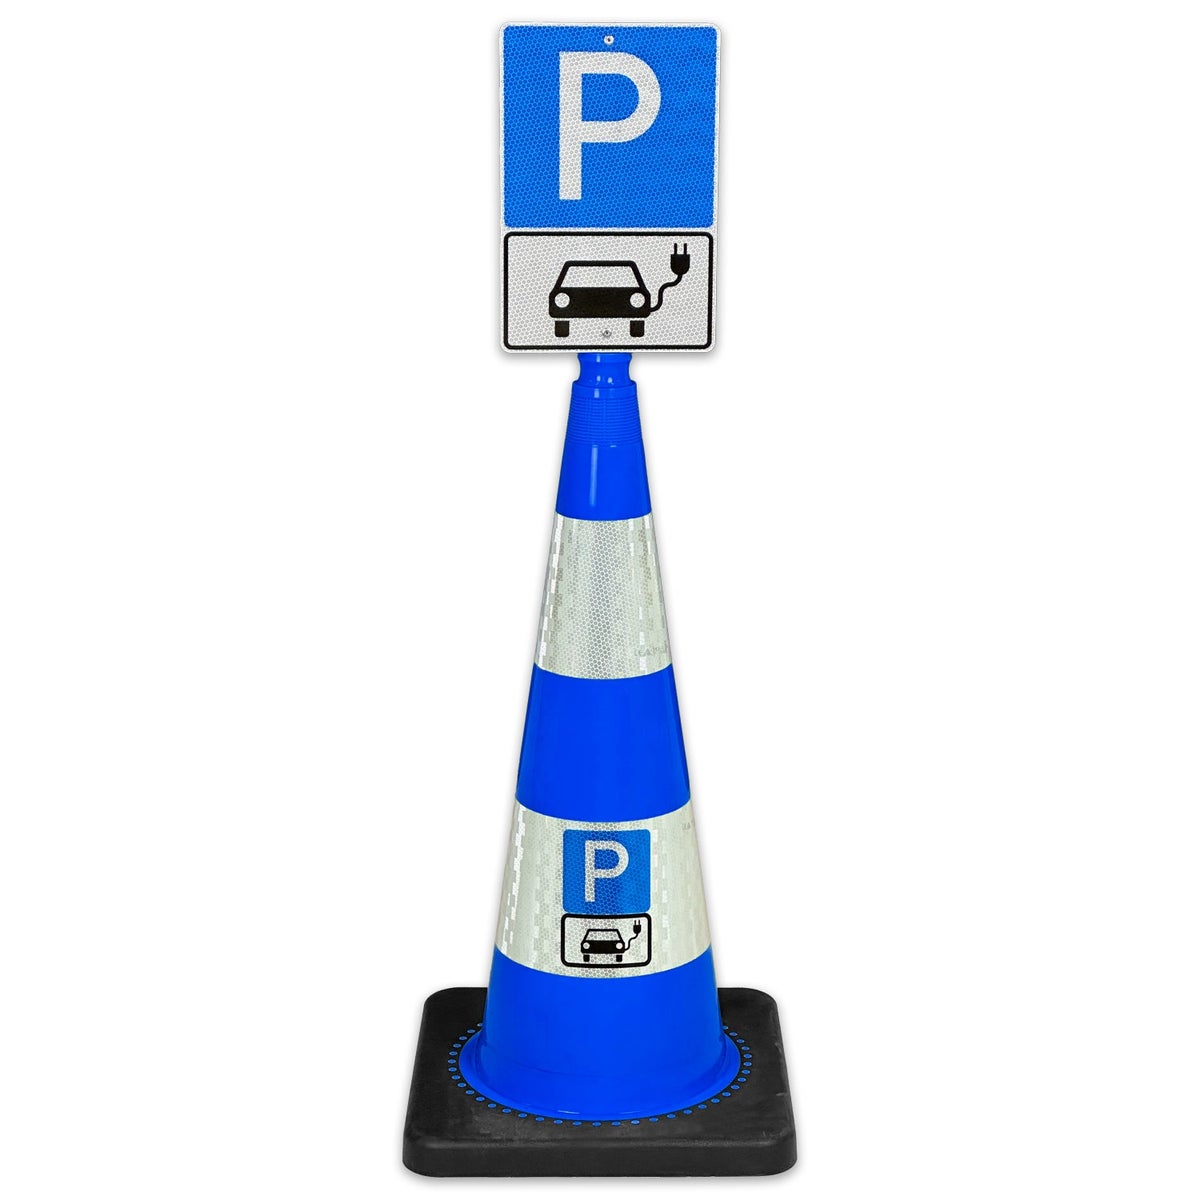 Leitkegel FLEX 75cm hoch mit Schild 30 x 20cm Parkplatz nur für Elektroautos / mit reflektierender Folie und Hinweisschild / Leitkegel blau